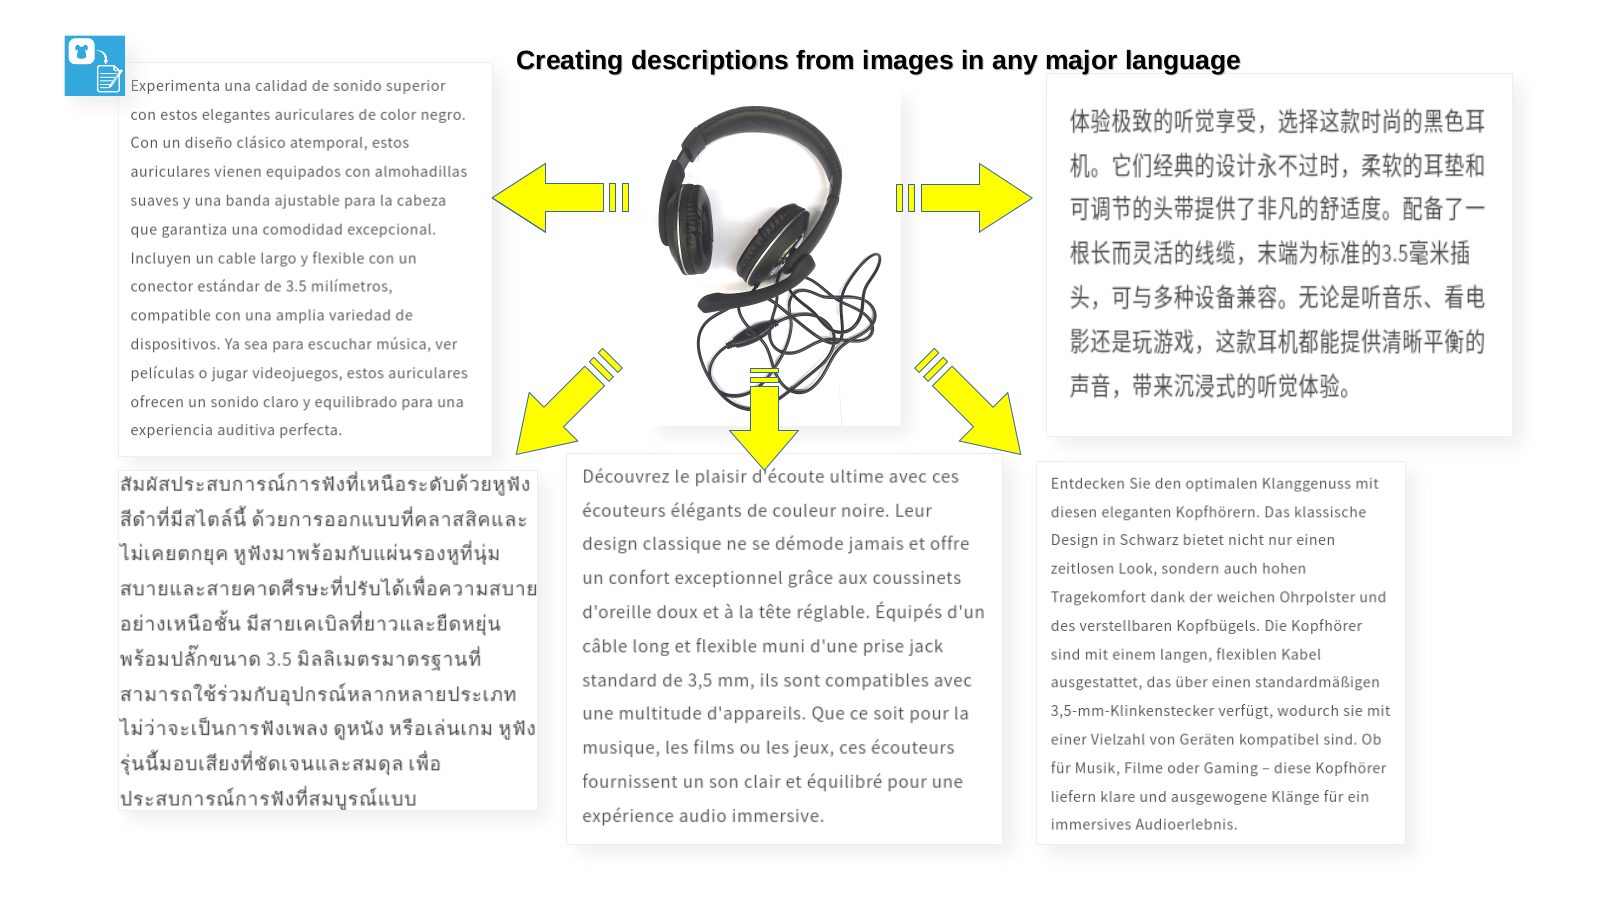 Imágenes de productos y contenido generado, ejemplo en varios idiomas